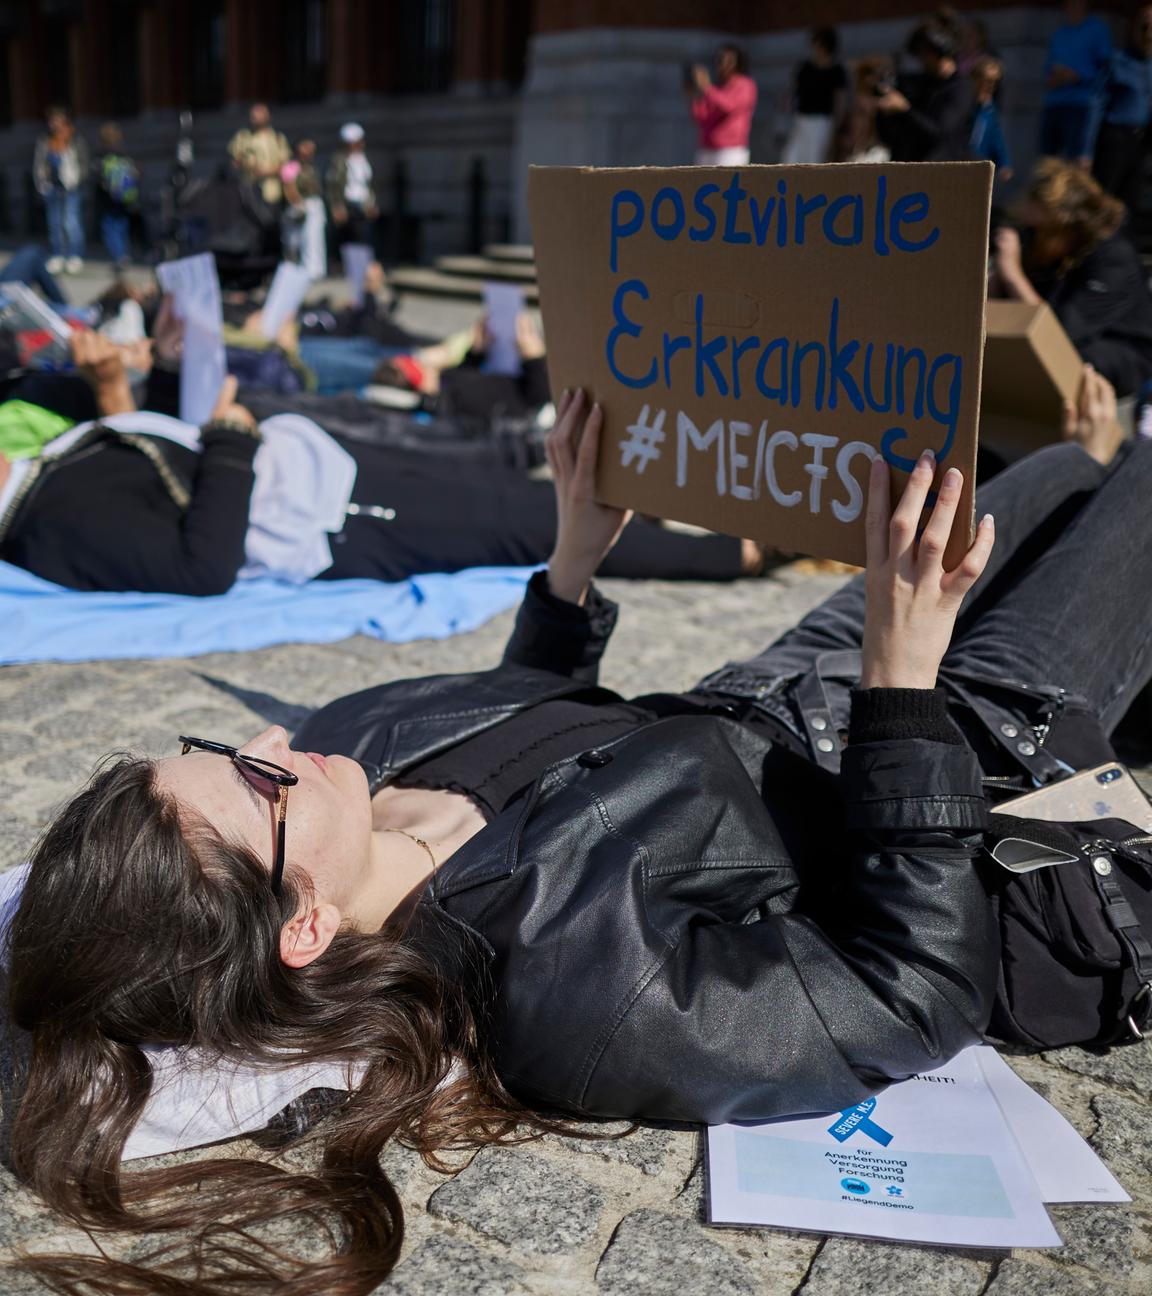 Berlin: Bei einer Liegend-Demonstration machen etwa fünfzig Demonstranten vor dem Roten Rathaus aufmerksam auf die ME/CFS-Erkrankung.